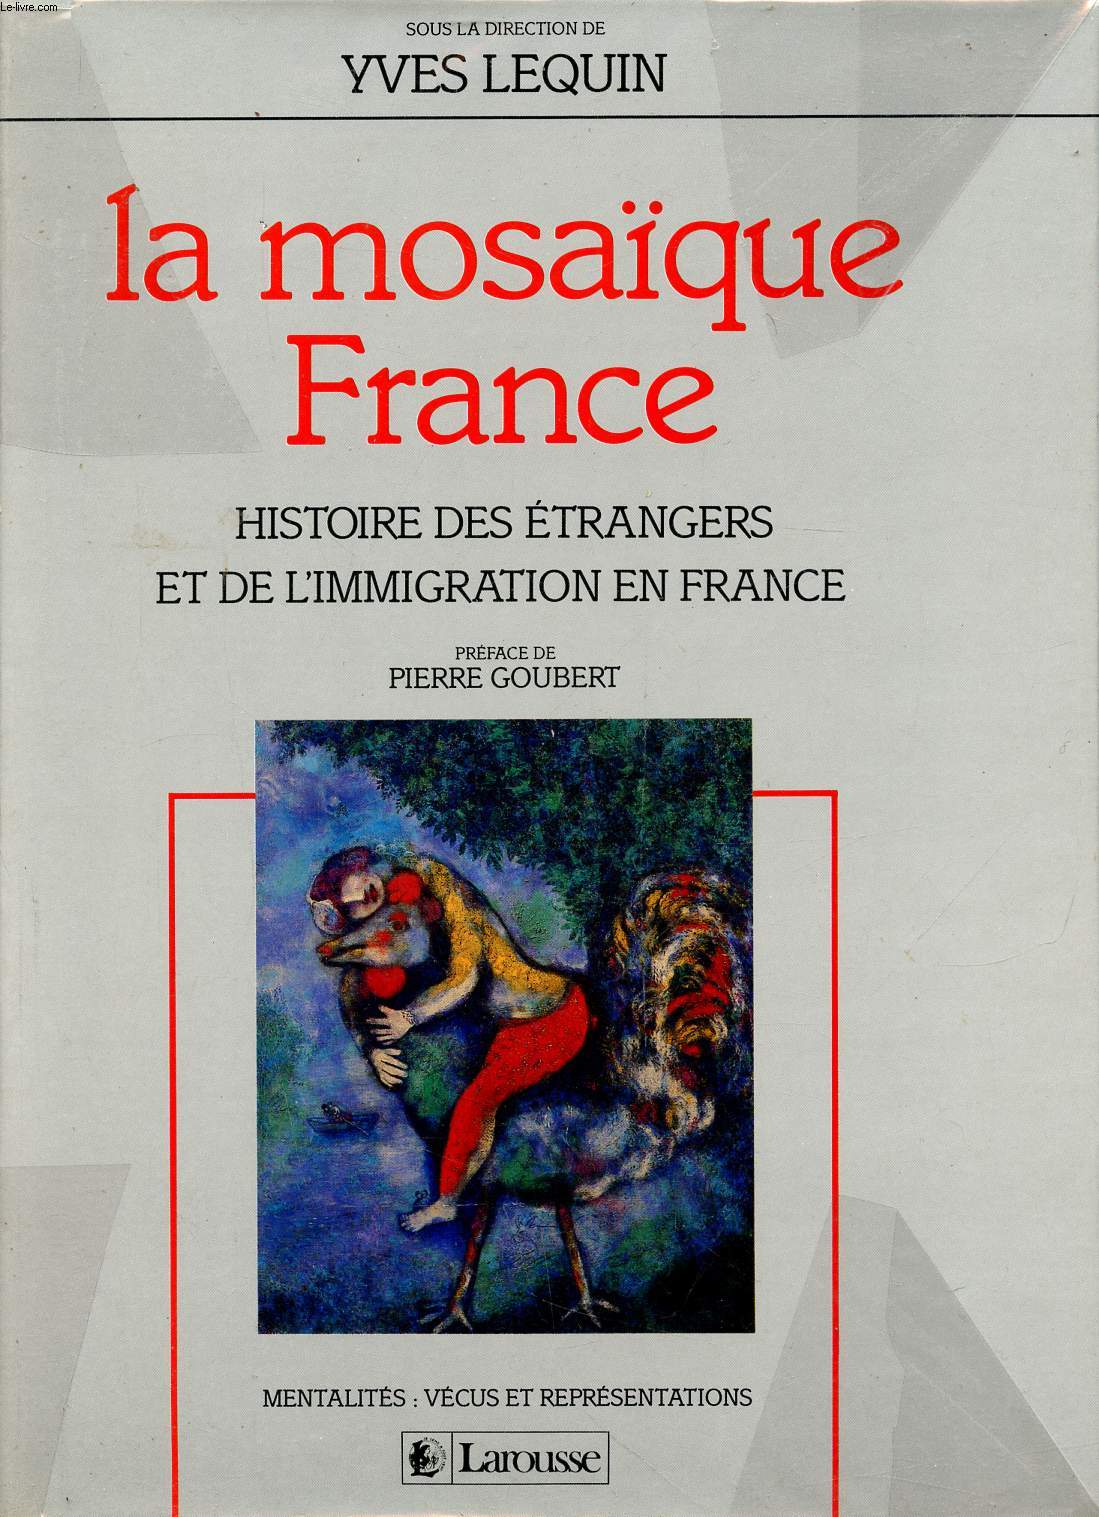 La mosaque France Histoire des trangers et de l'immigration en France